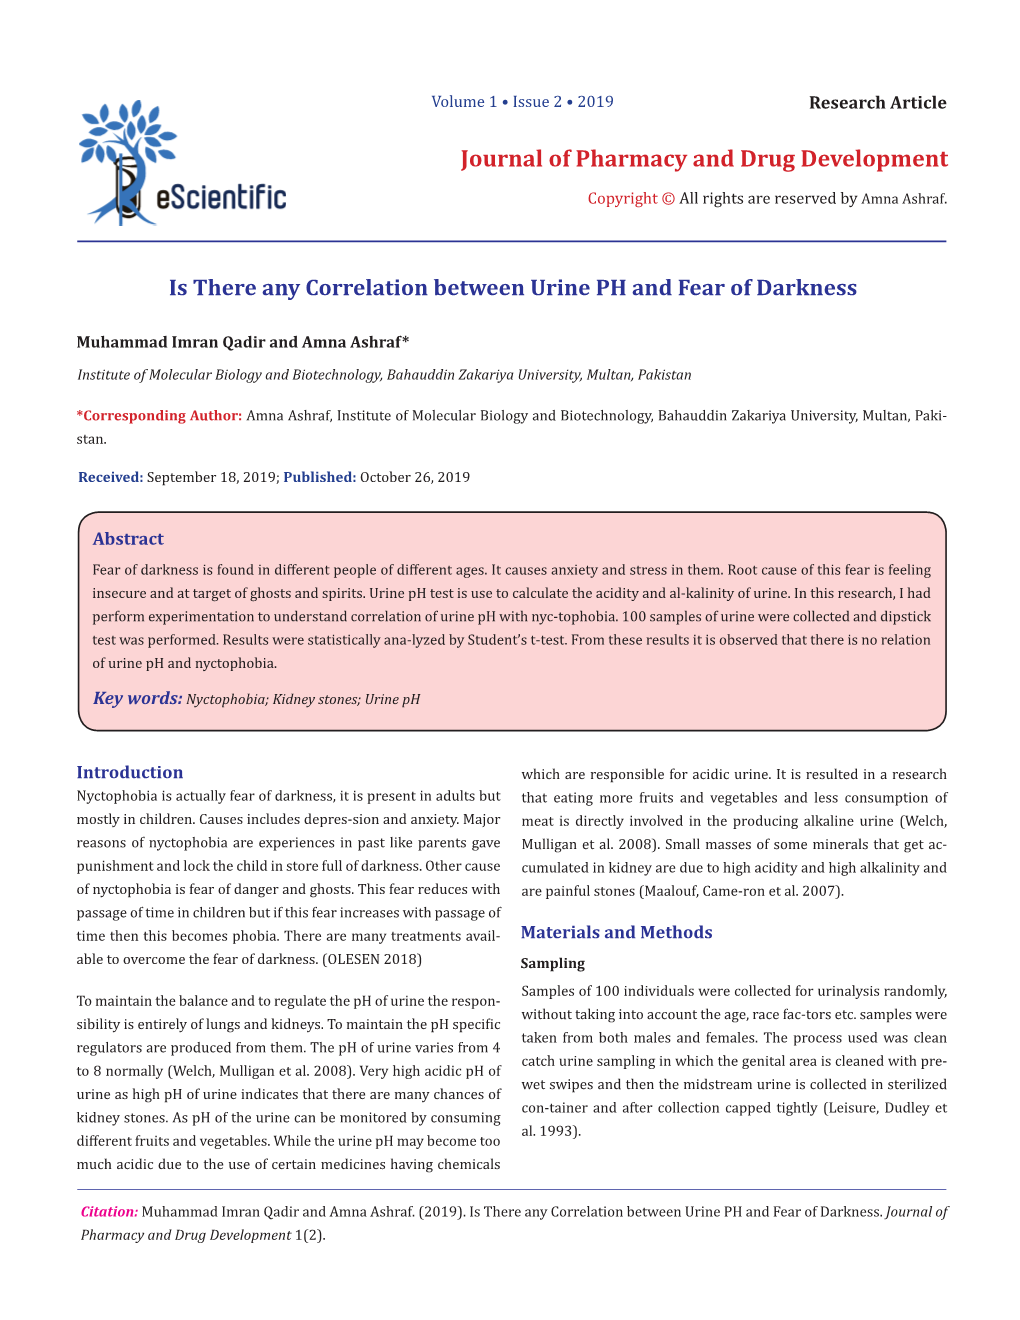 Journal of Pharmacy and Drug Development